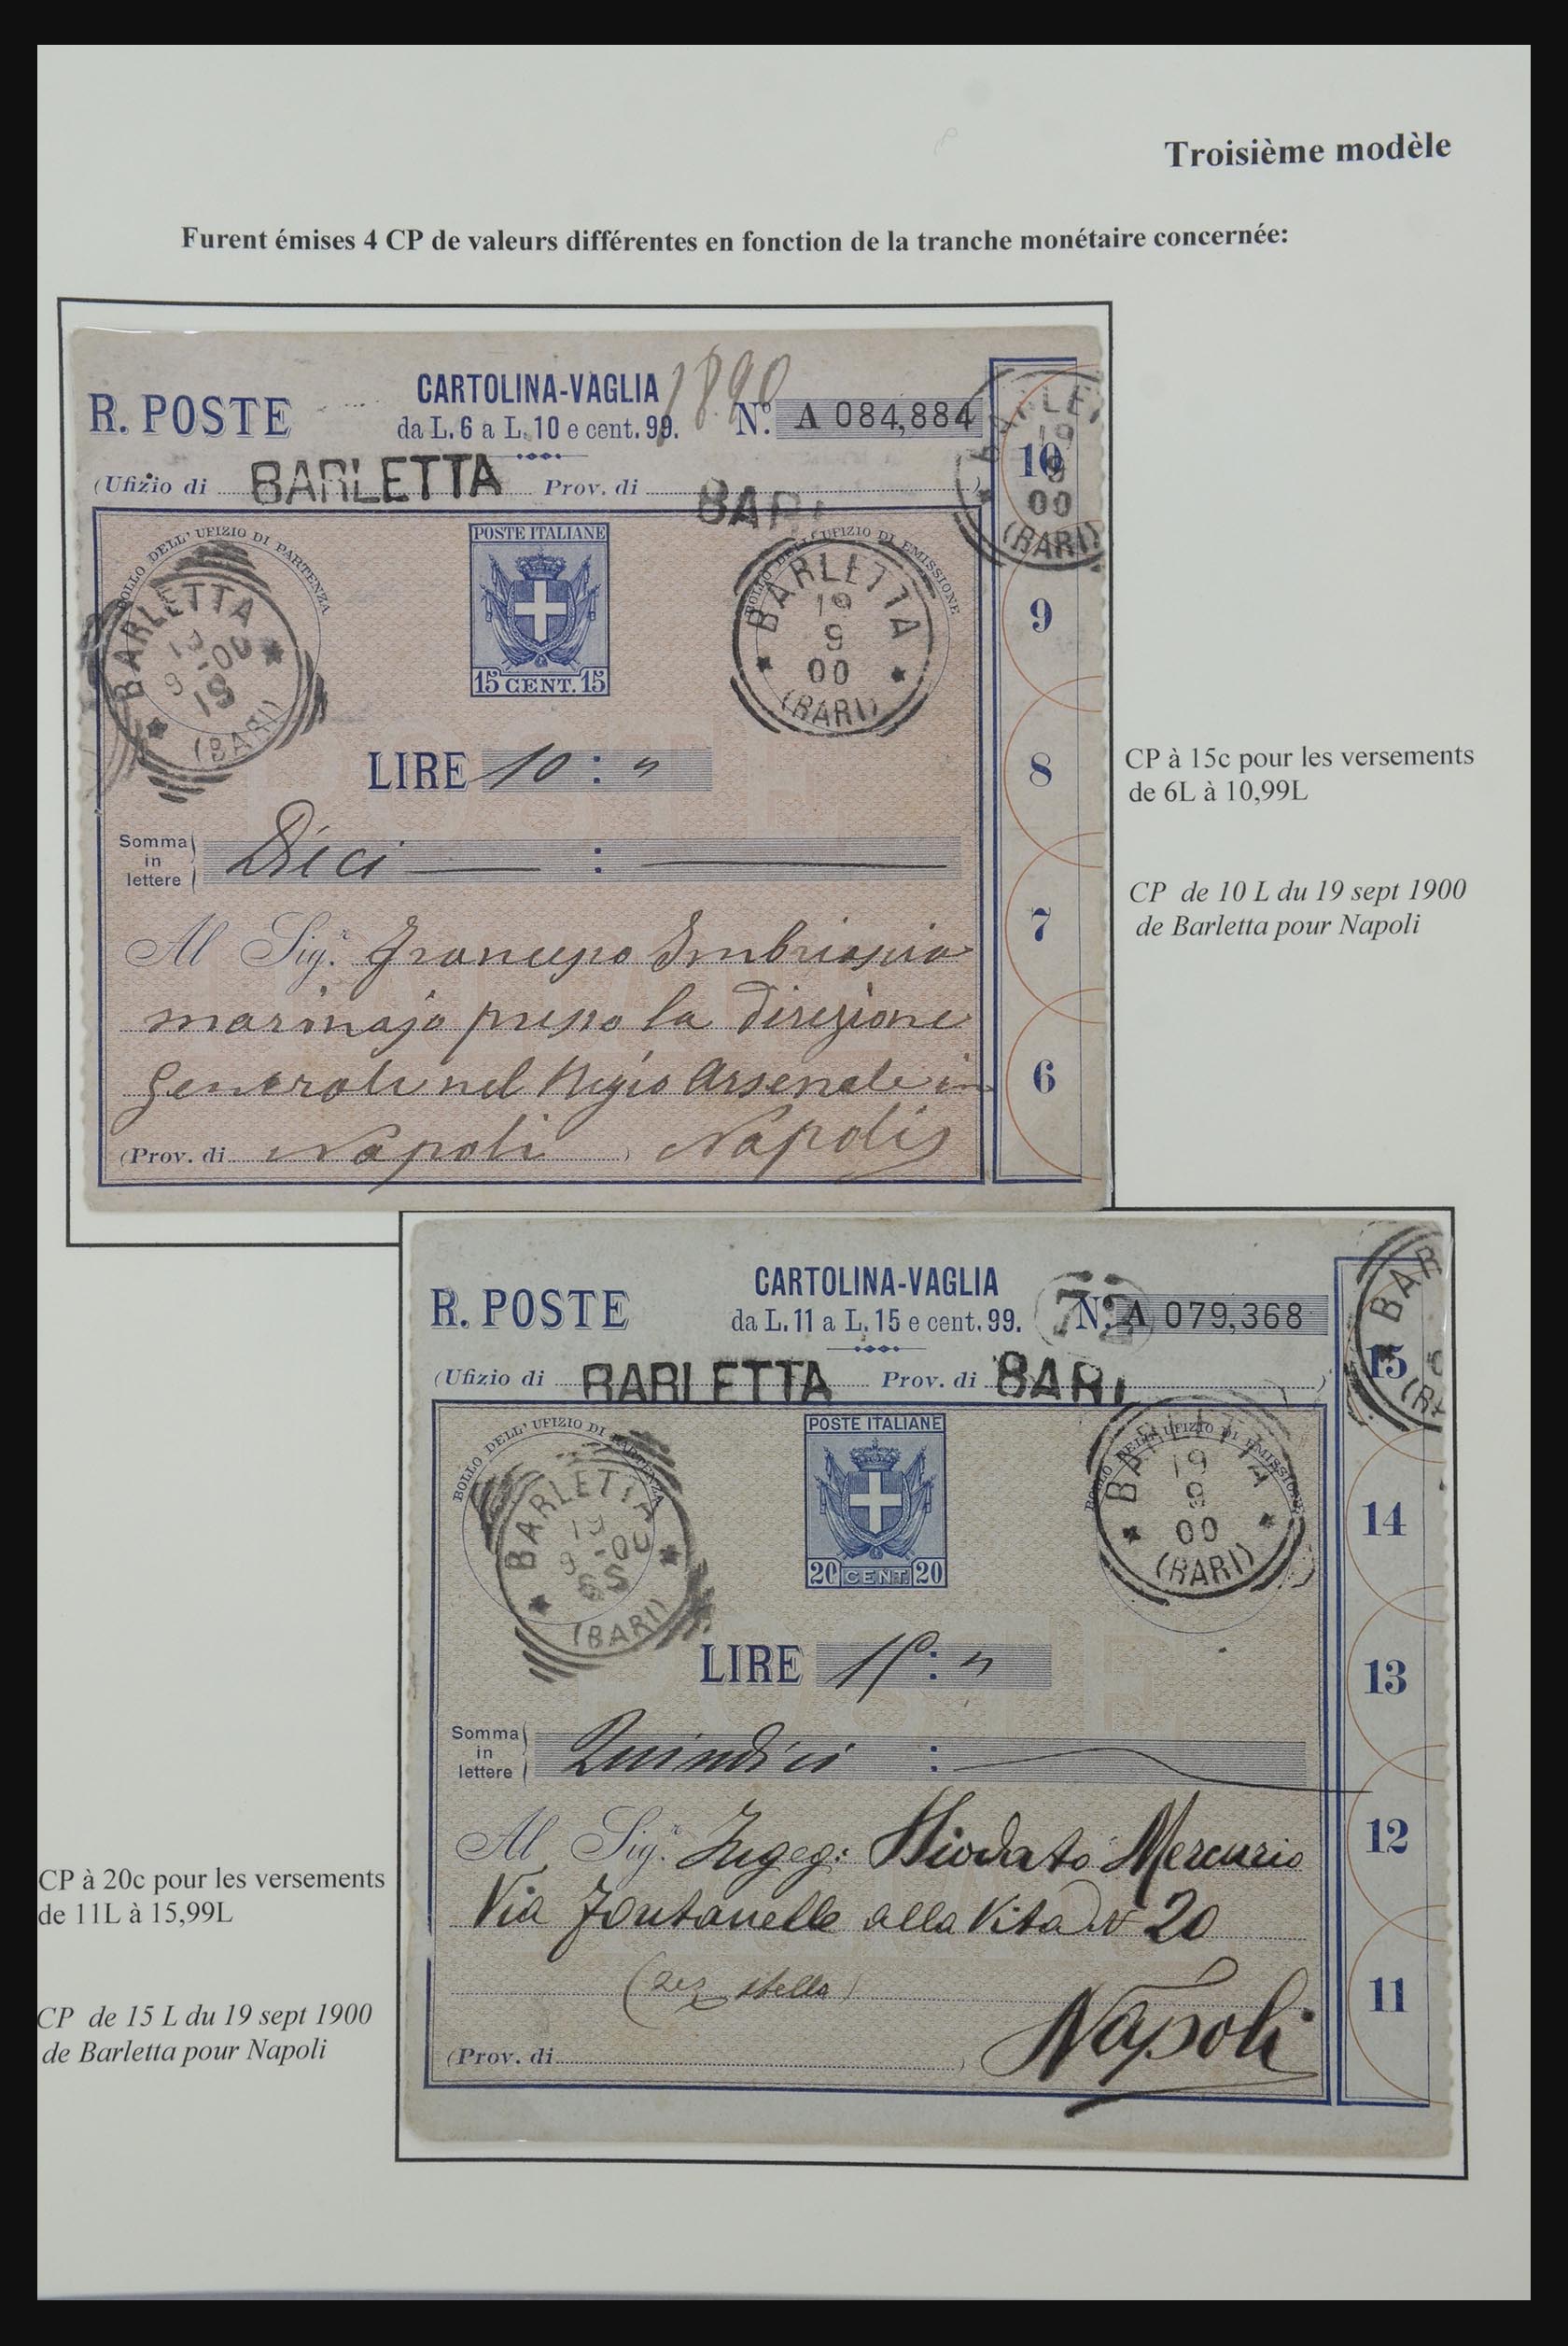 32243 014 - 32243 Italië postbewijskaarten 1892-1902.